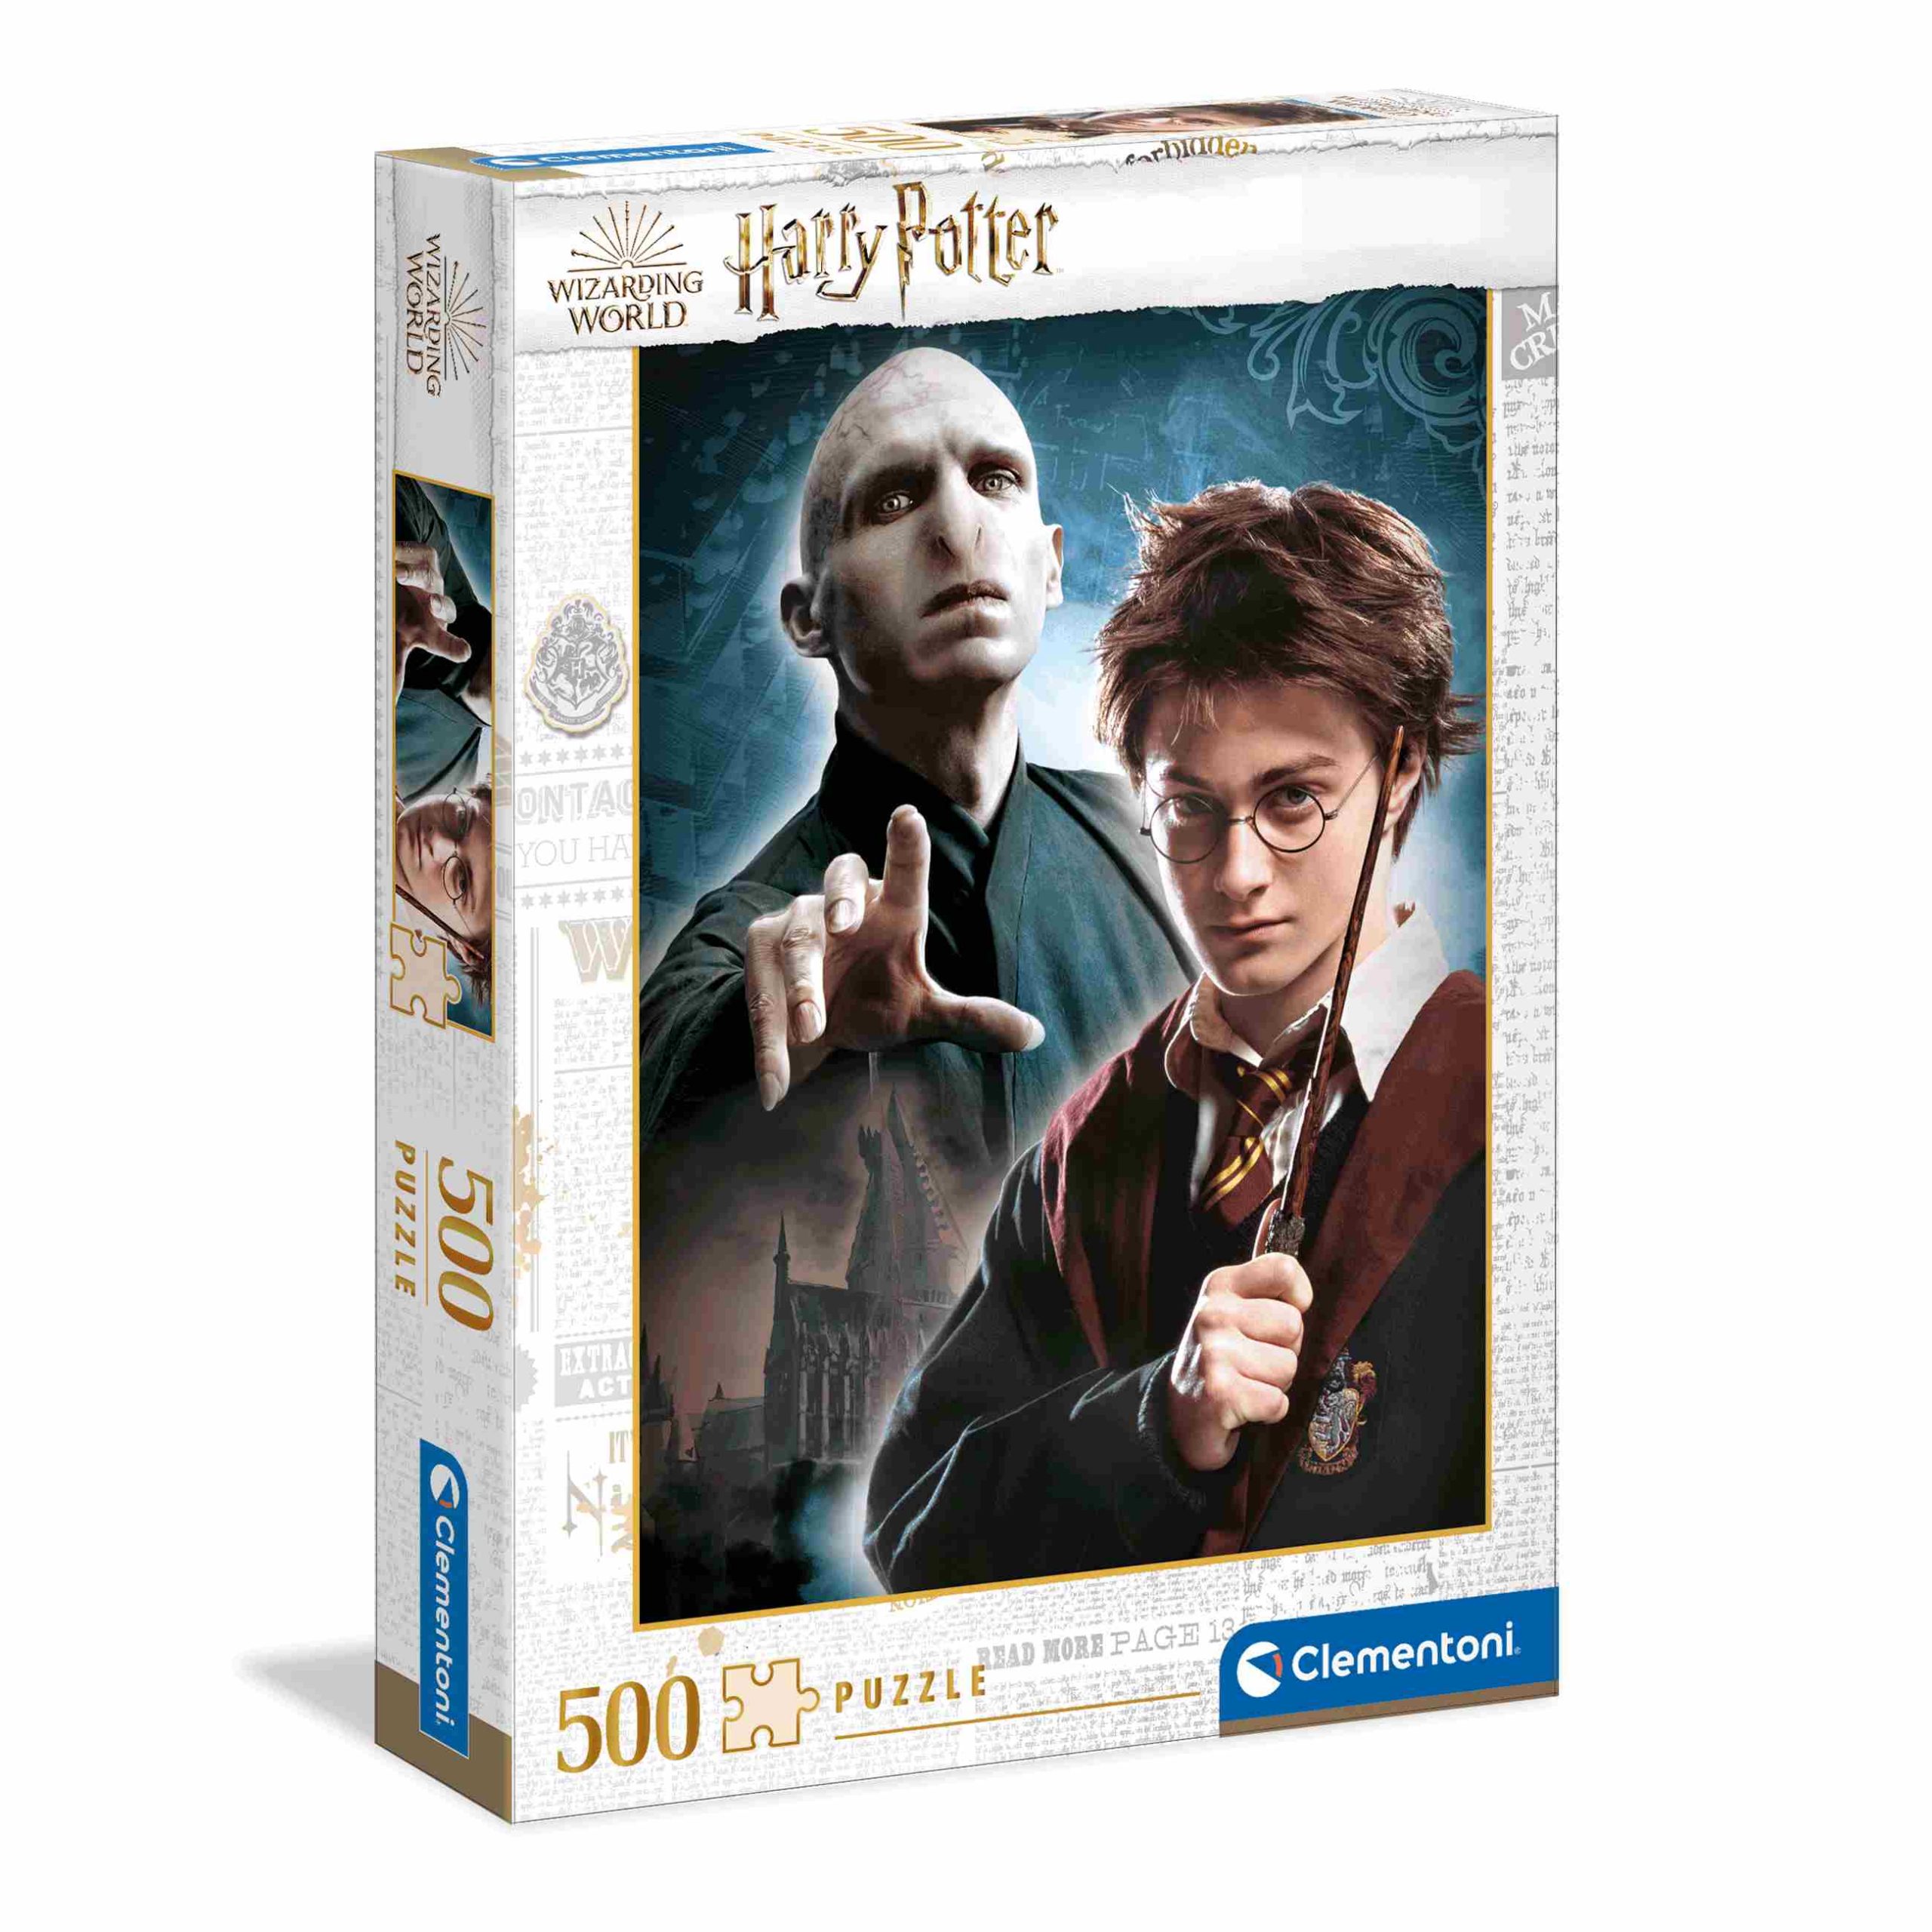 Clementoni puzzle harry potter - 500 pezzi - CLEMENTONI, Harry Potter